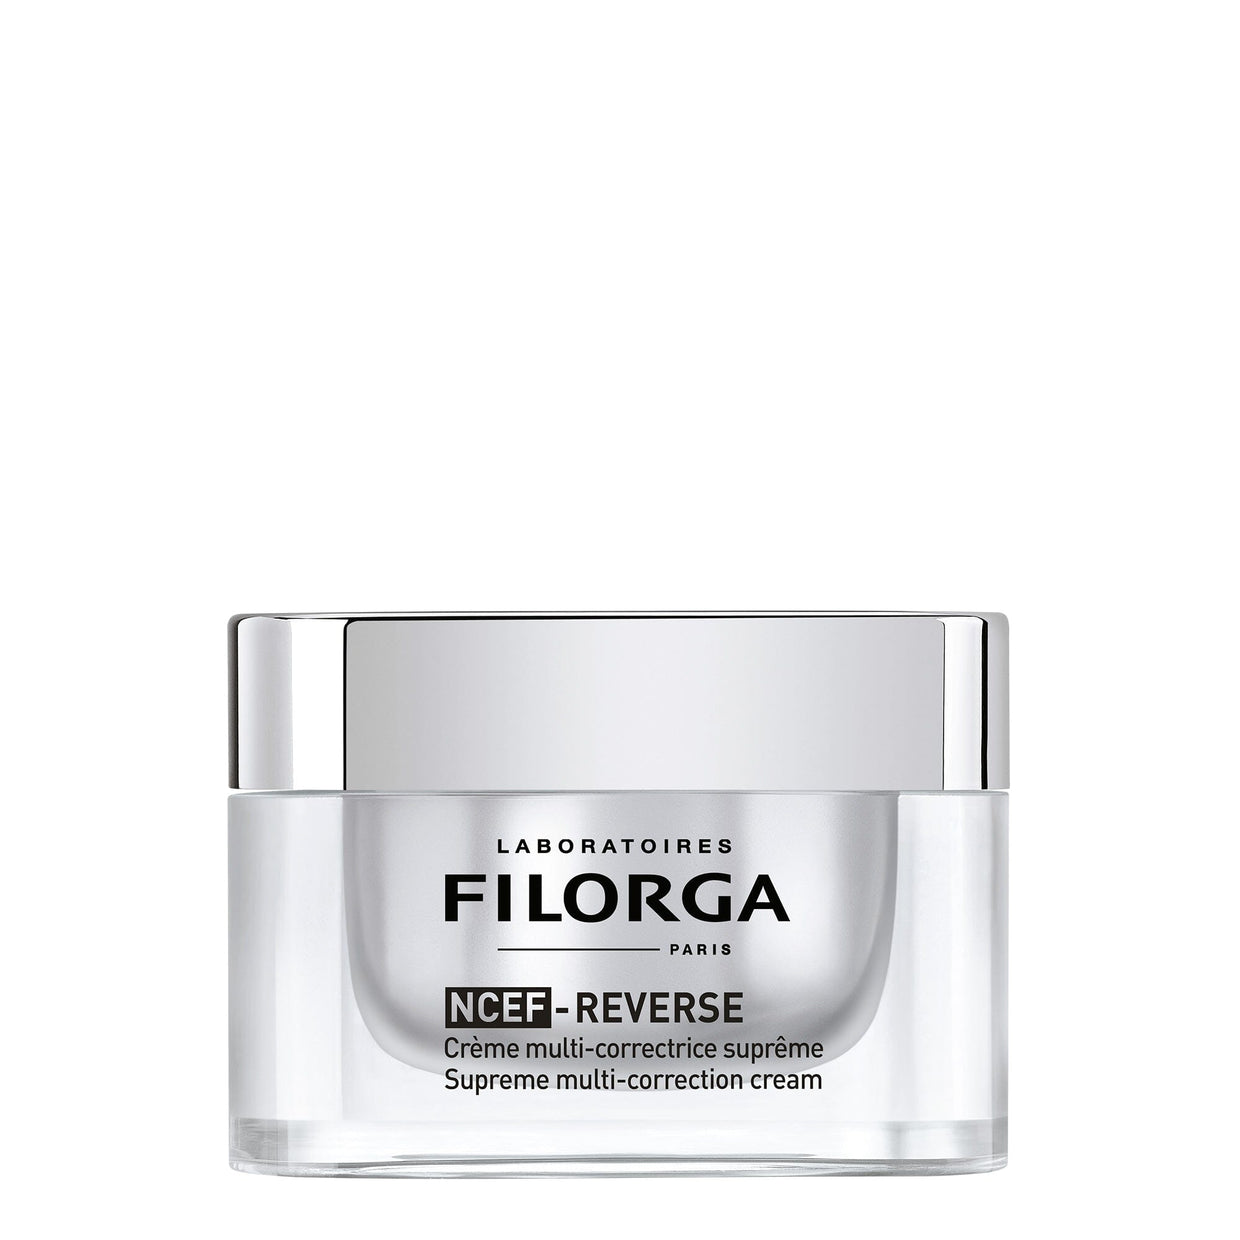 Filorga NCEF-REVERSE Supreme Multi-Correction Cream Filorga 1.69 oz. Shop at Exclusive Beauty Club